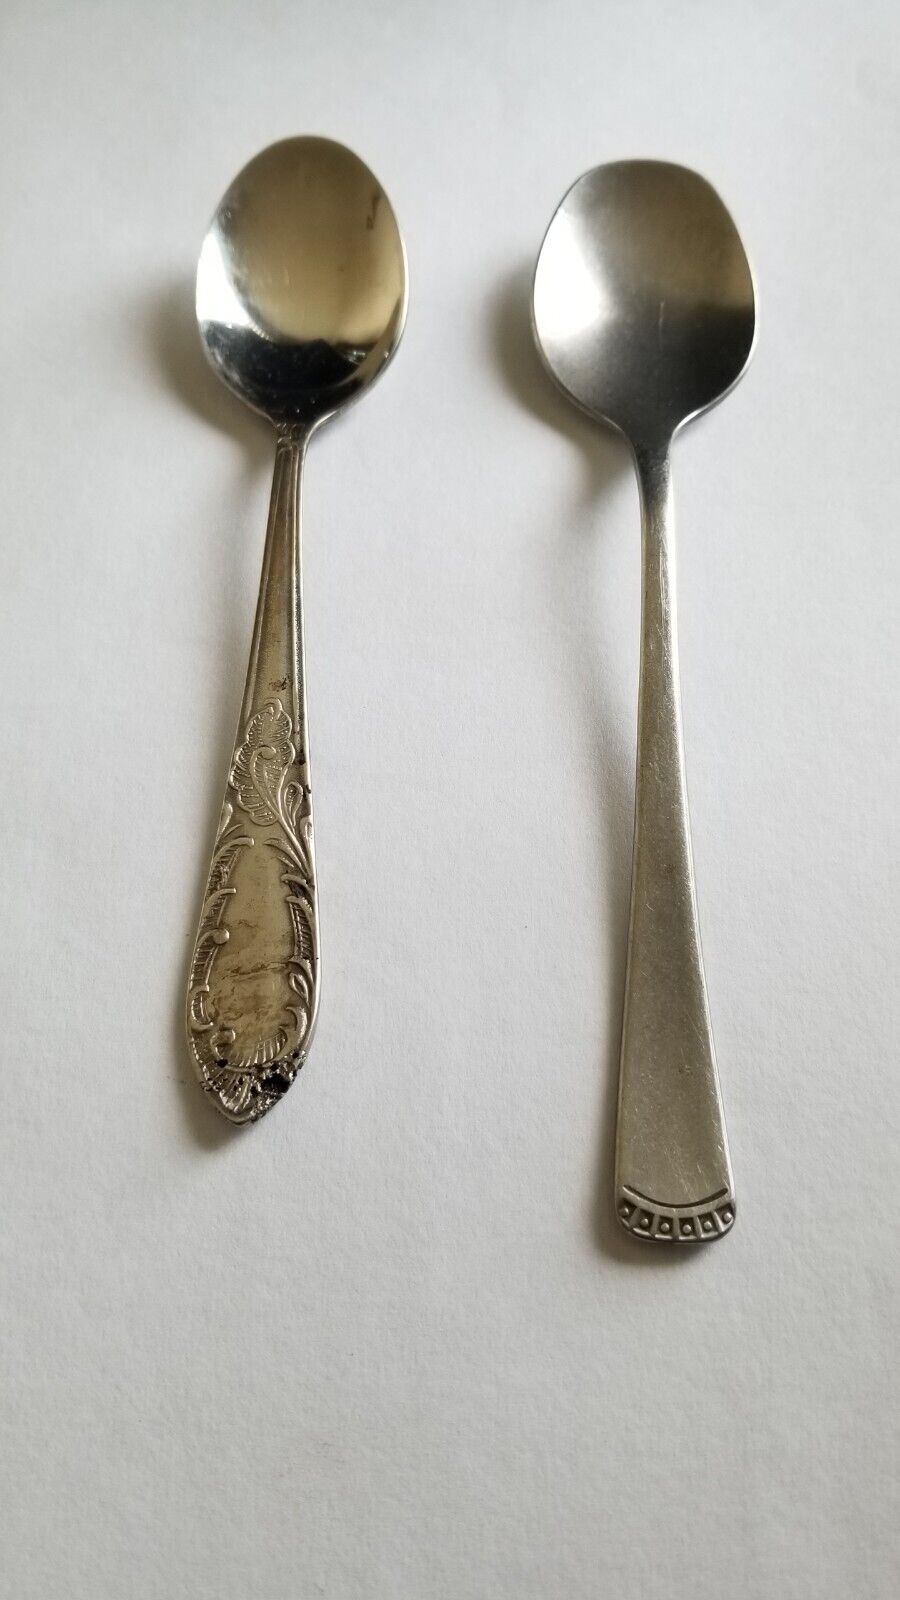 Vintage Soviet Spoon Lot(USSR)